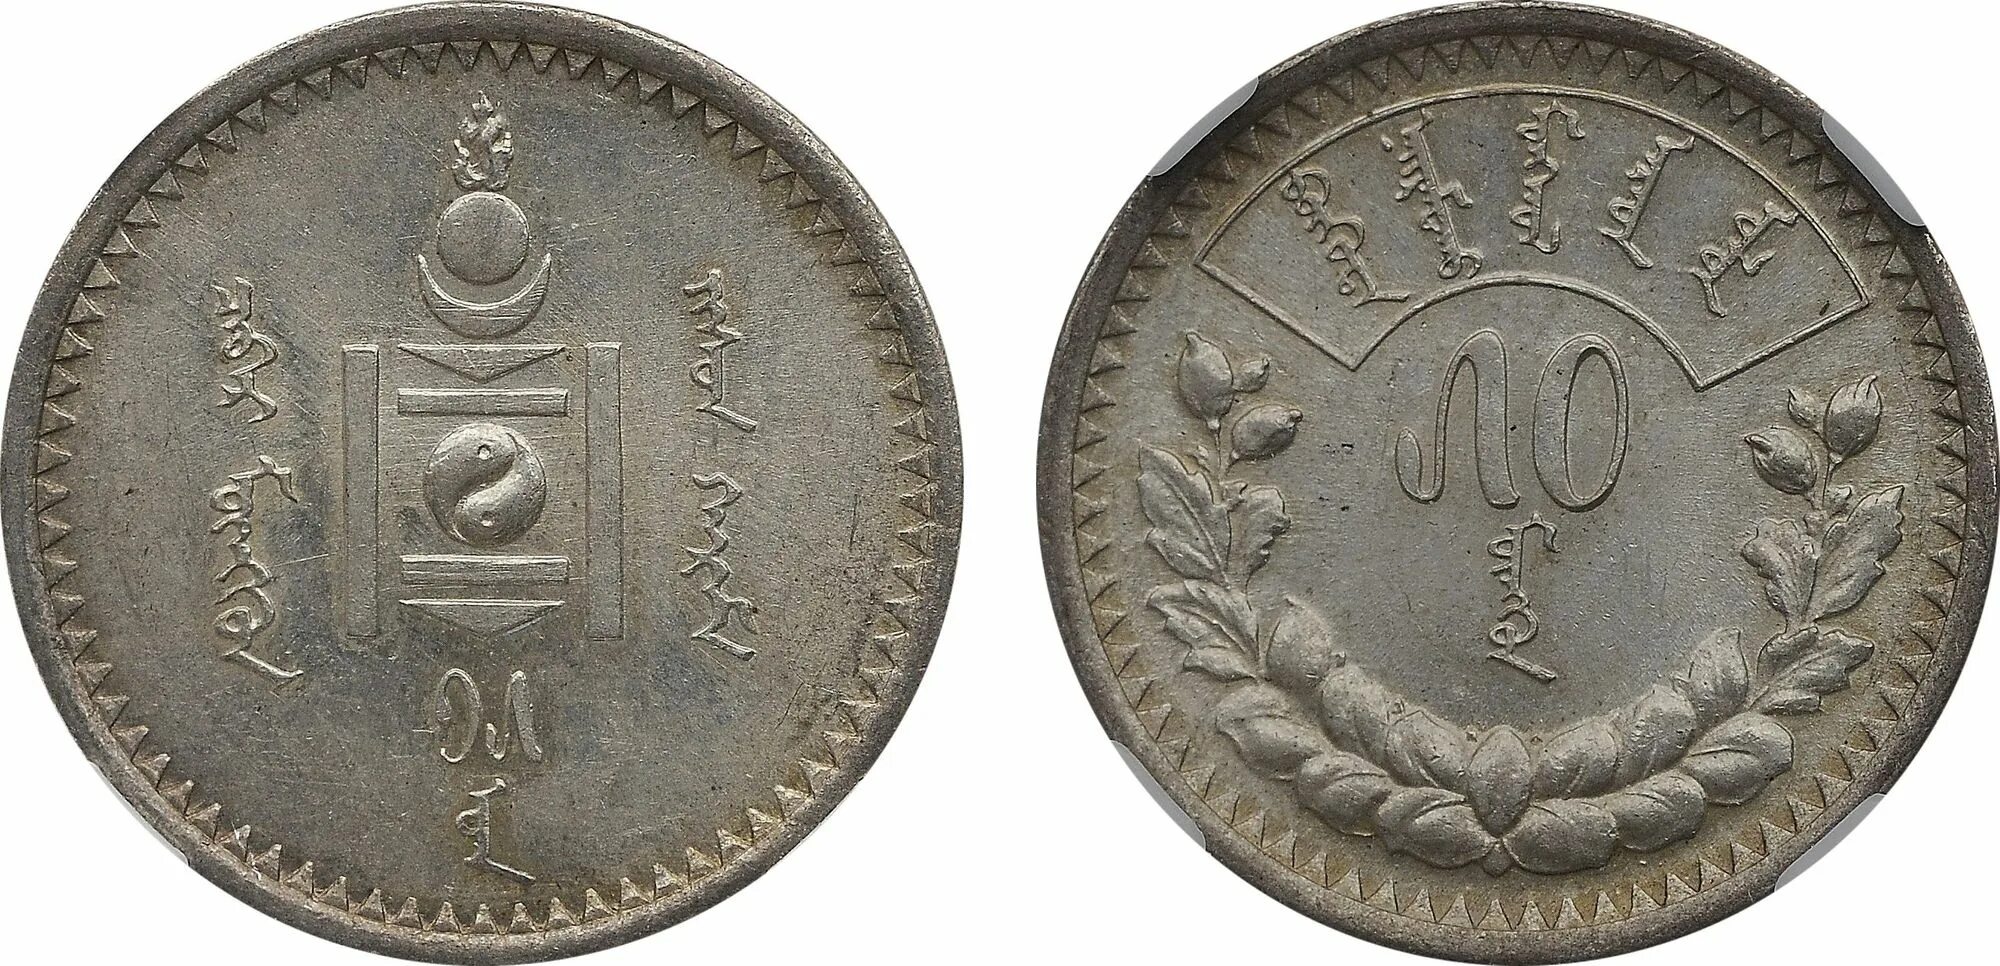 0 currencies. Монголия 20 мунгу, 27 (1937). Монголия 10 мунгу, 15 (1925). 20 Мунгу 1937. Монета 15 мунгу 1937 Монголия.